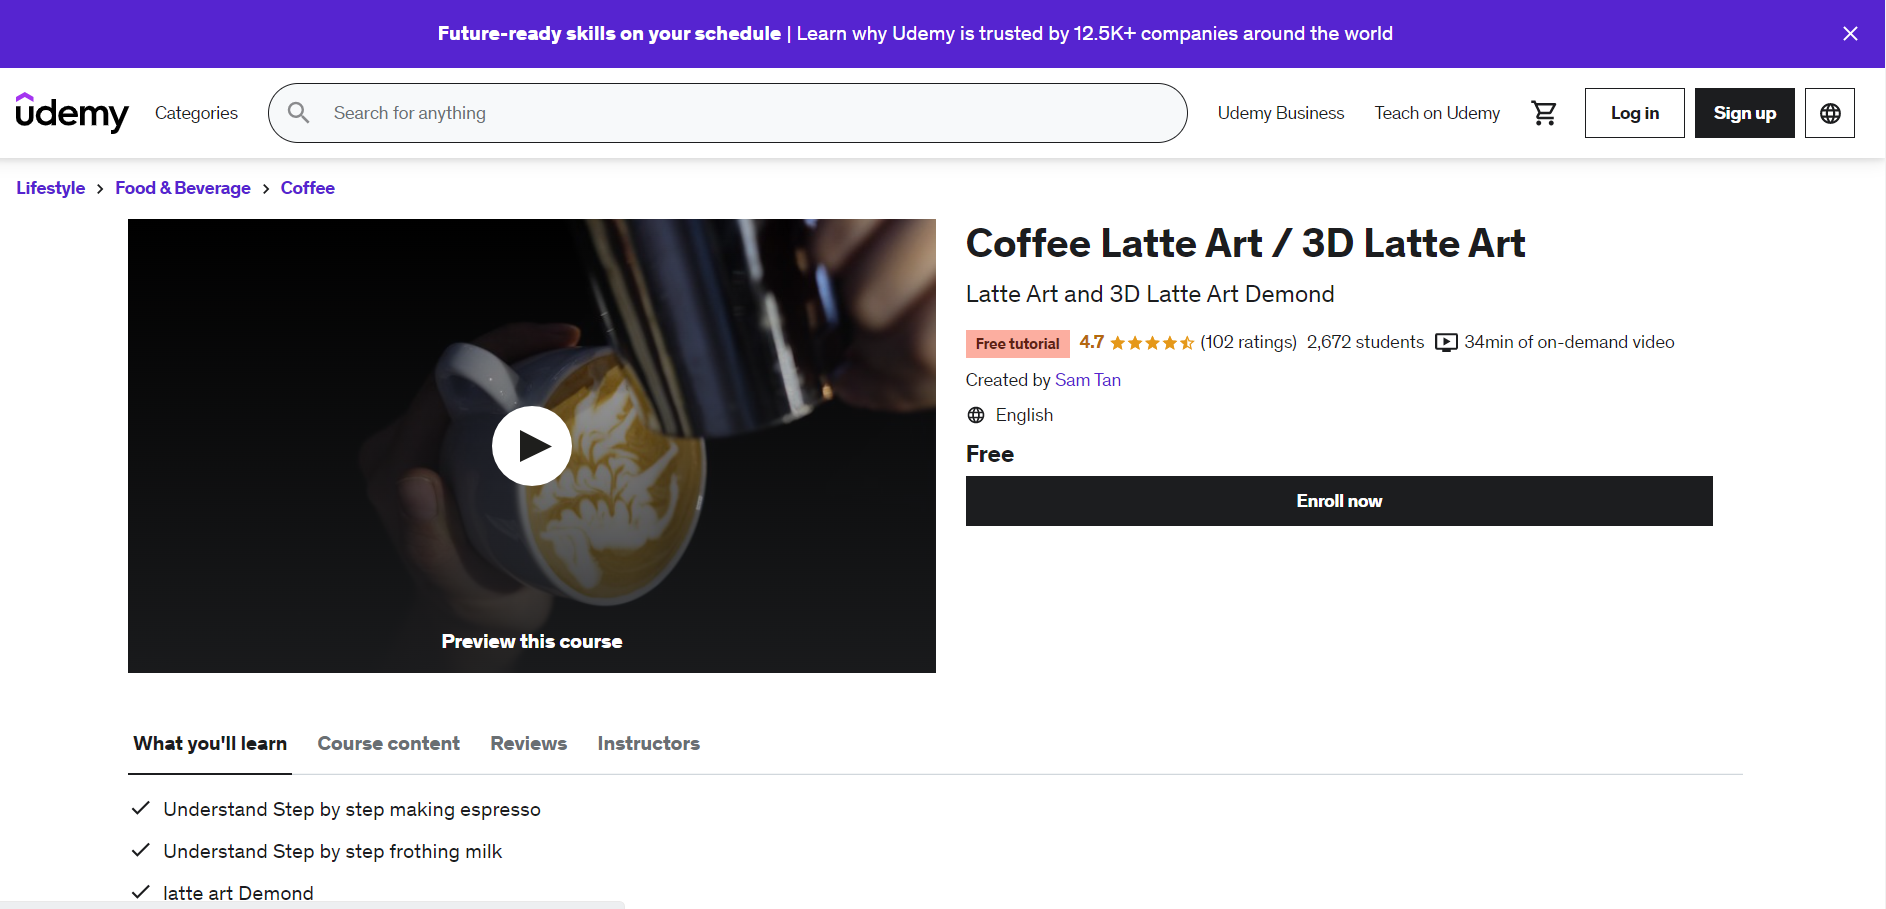 Coffee Latte Art: 3D Latte Art